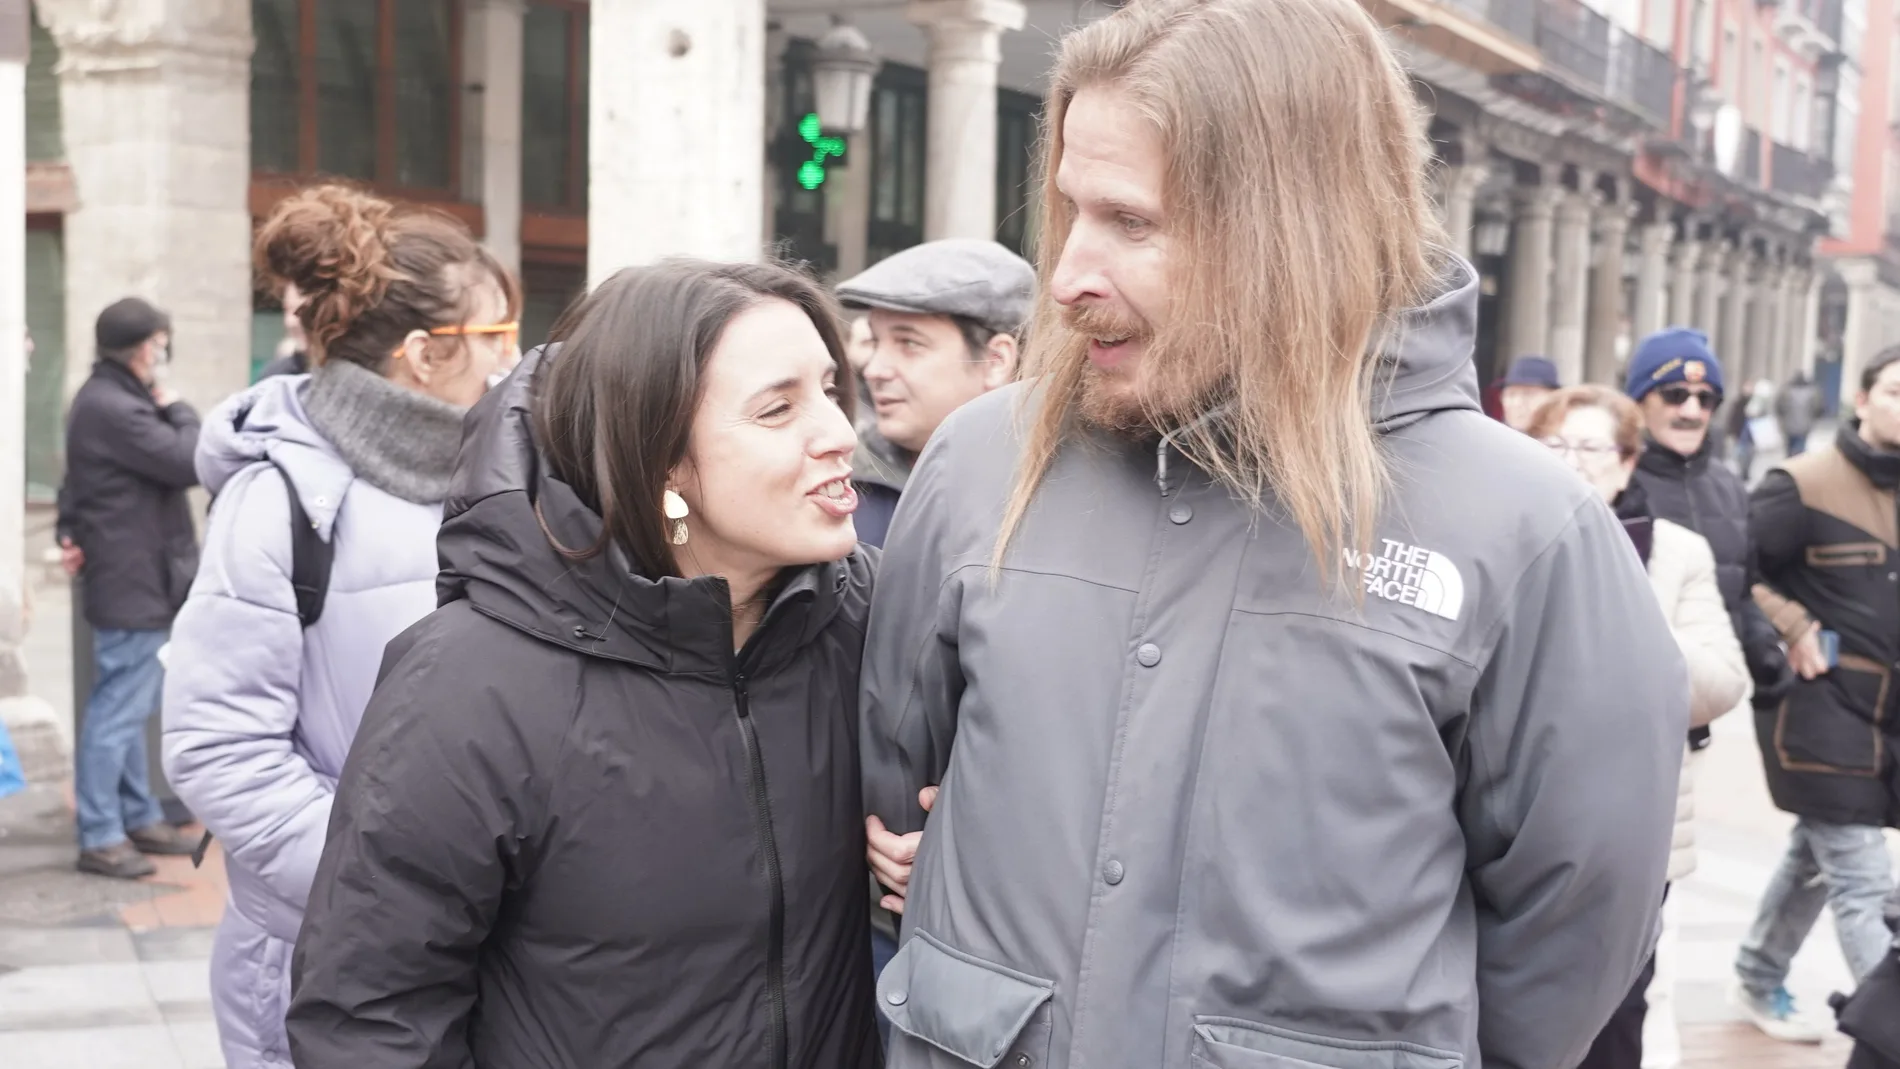 Pablo Fernández e Irene Montero, durante el acto de Podemos en la Plaza de Fuente Dorada de Valladolid, donde acampó el movimiento del 15-M